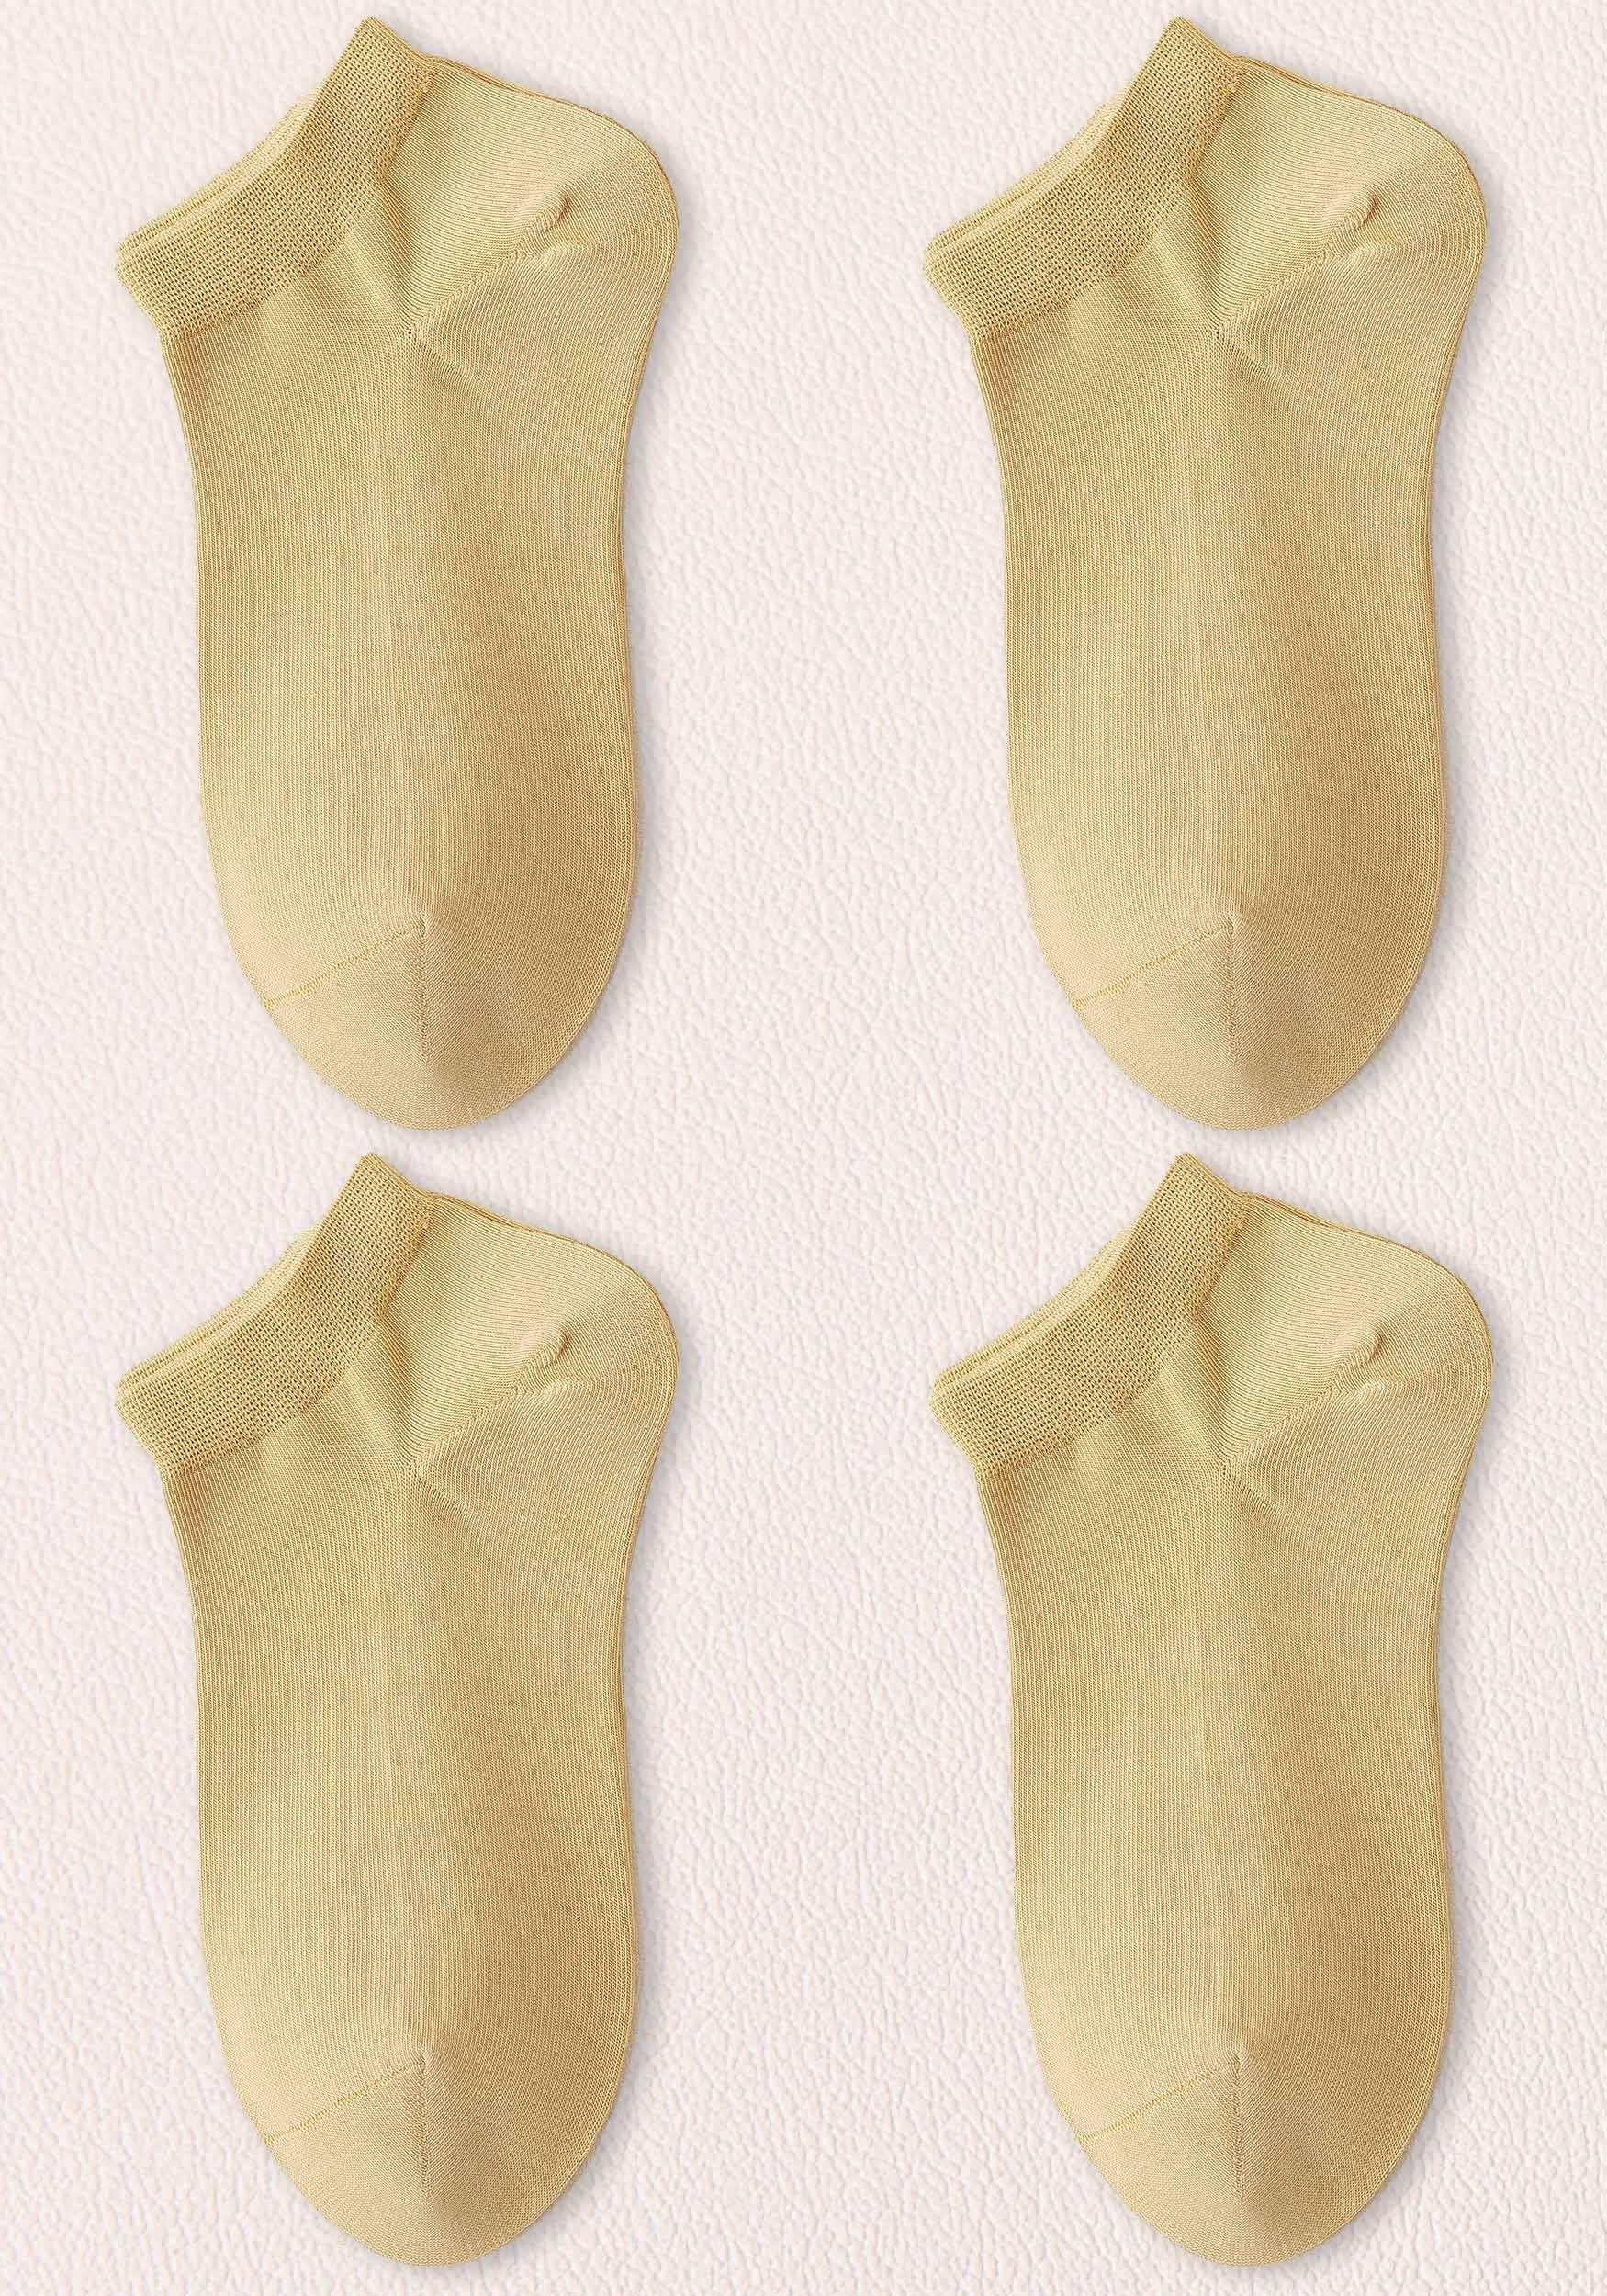 MAGICSHE Freizeitsocken Damen Socken– warm, atmungsaktiv,lange haltbar, kein Verrutschen (4-Paar) Invisible Socken bequem Sneakersocken Gelb